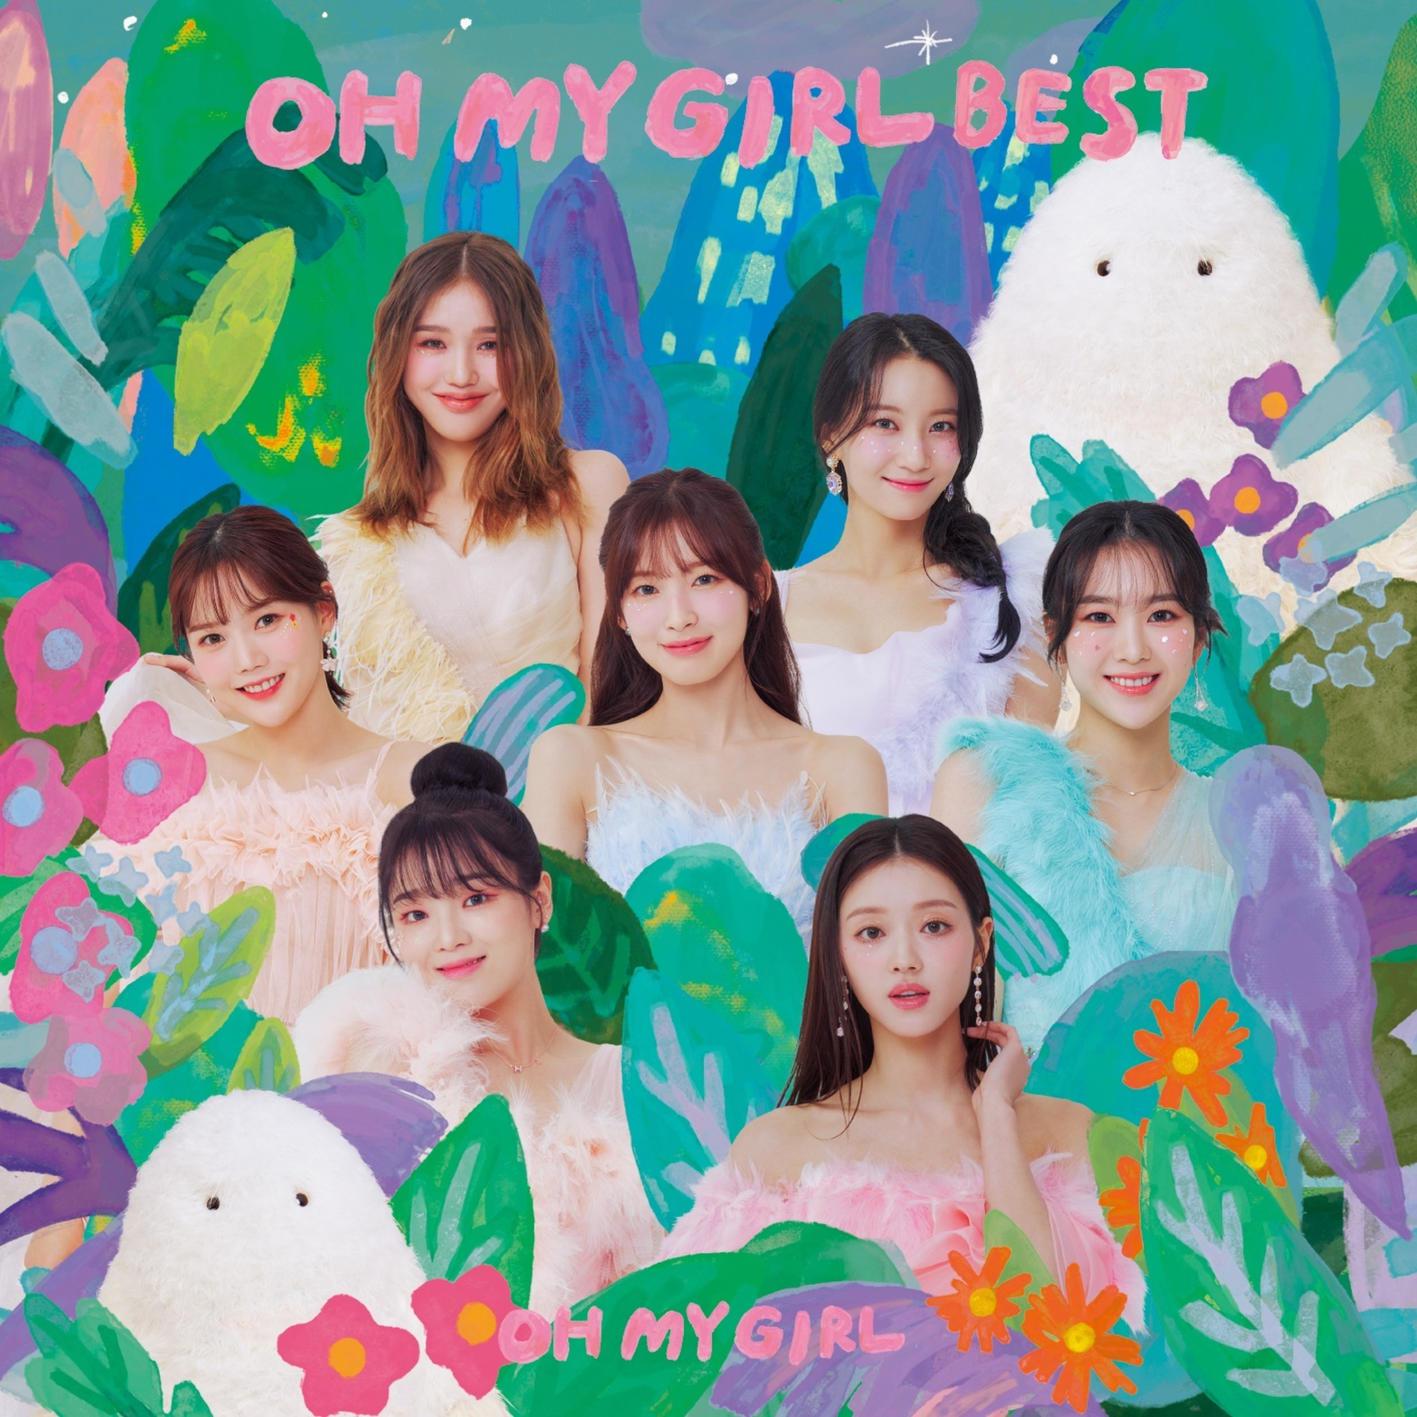 五番目の季節 Japanese ver.歌词 歌手OH MY GIRL-专辑OH MY GIRL BEST-单曲《五番目の季節 Japanese ver.》LRC歌词下载